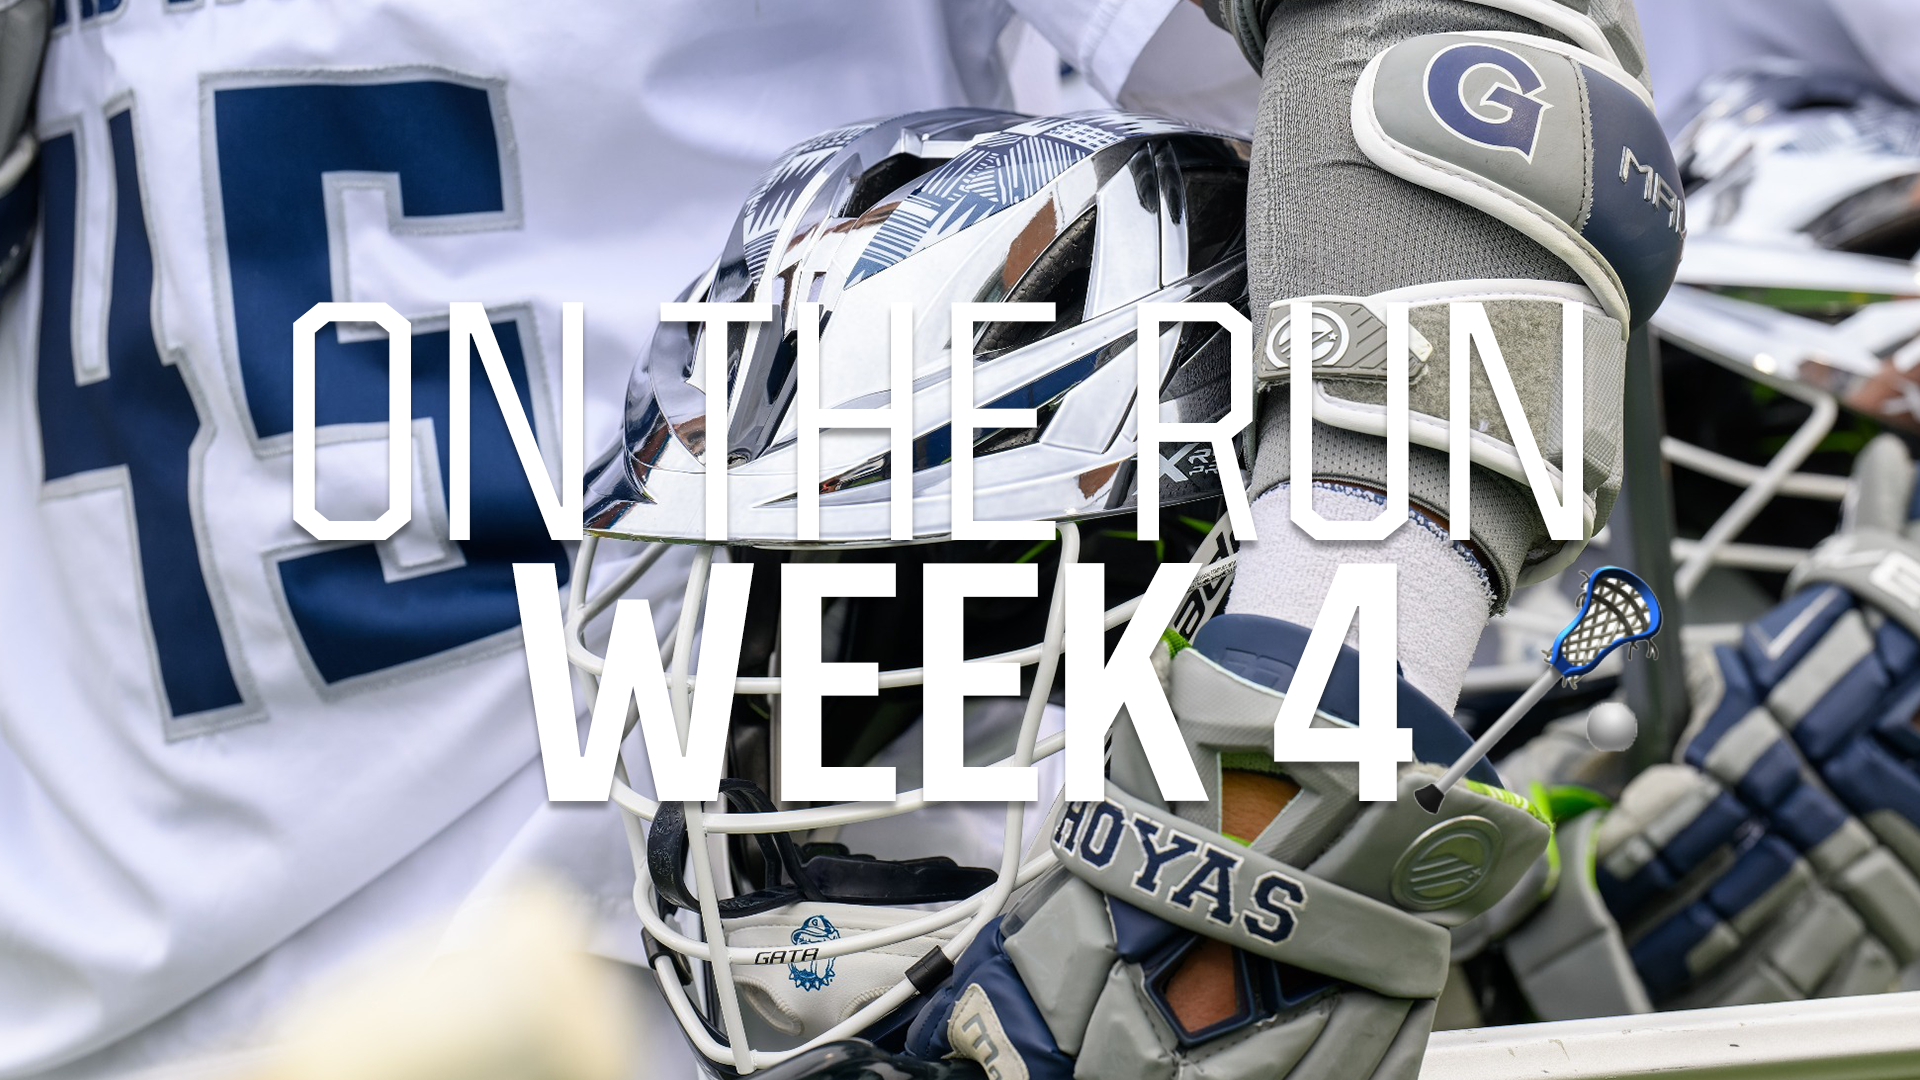 On the Run: Week 4 NCAA Lacrosse Blog